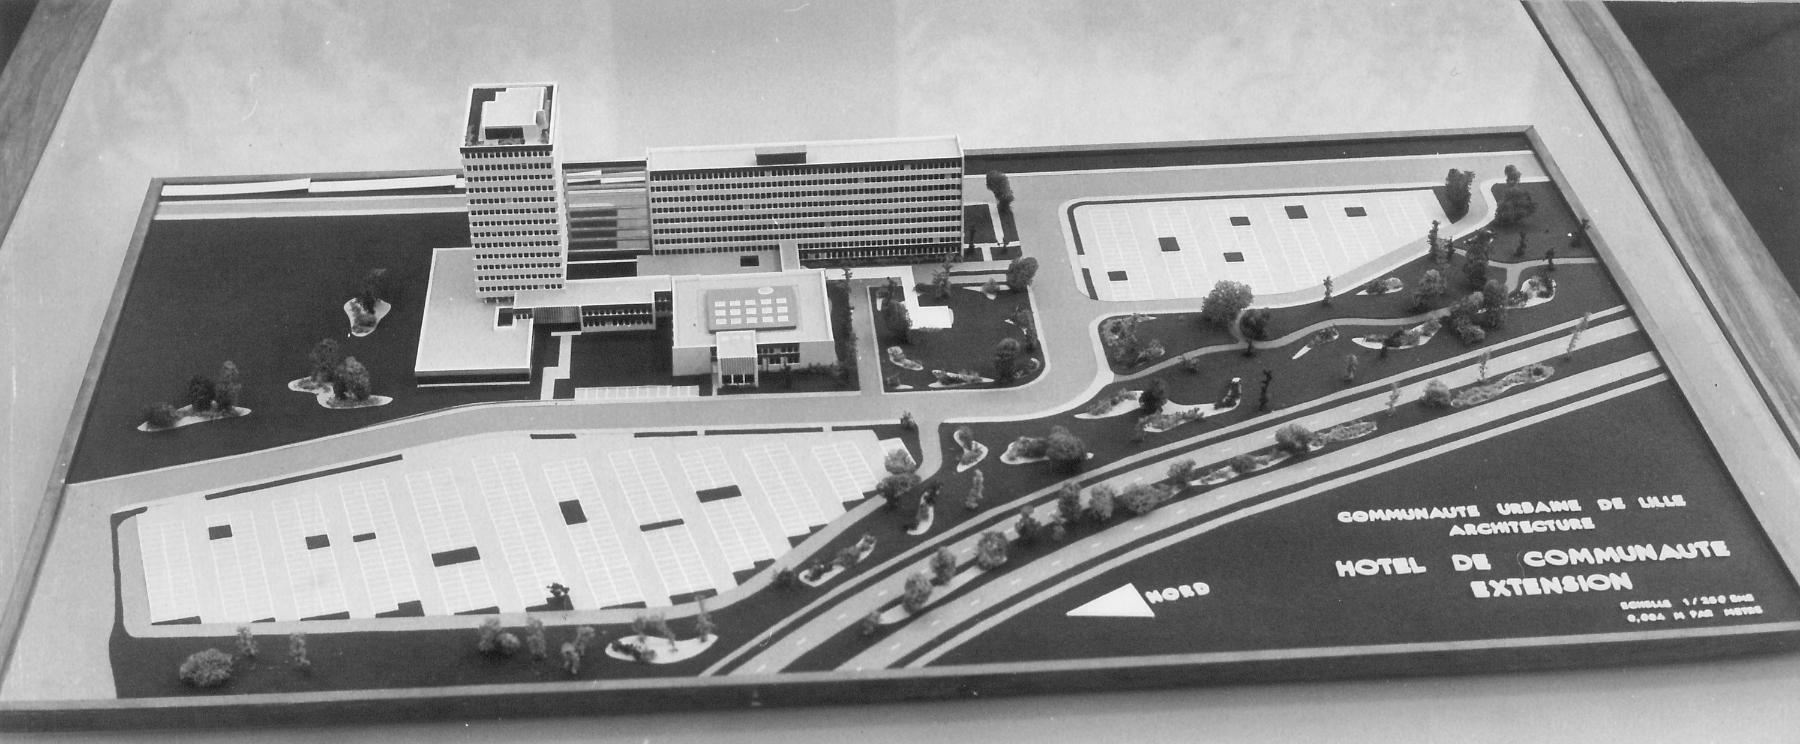 Maquette du projet d’extension de l’hôtel communautaire (CUDL), vers 1974. Vue depuis le côté ouest (Archives communautaires. Métropole européenne de Lille ; 11 Ph 261 n° 9). 